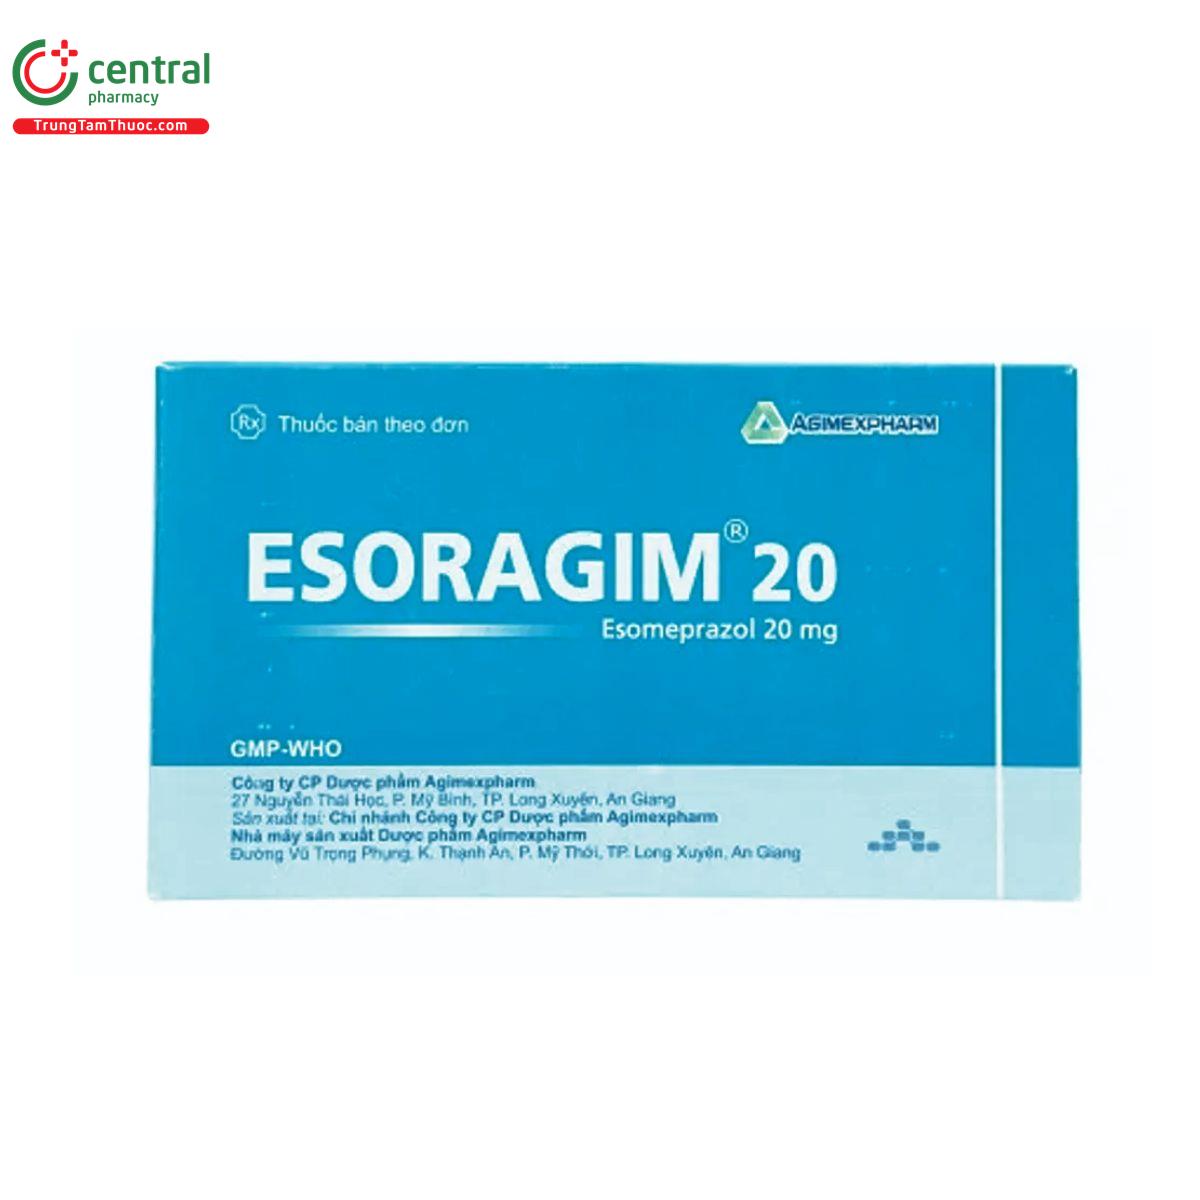 esoragim 20 3 C1002